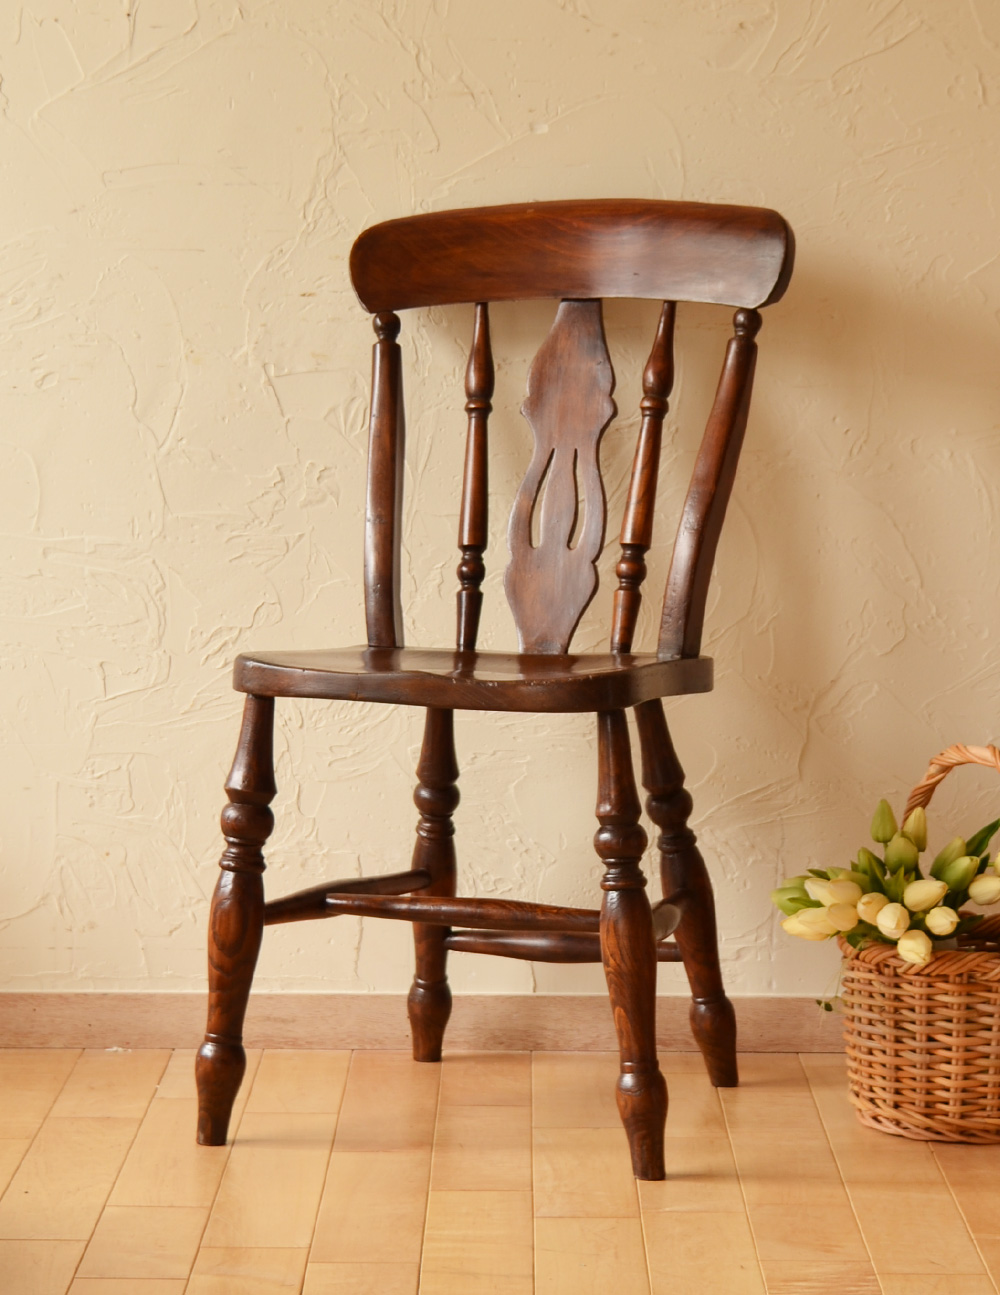 イギリスのアンティークの椅子、お洒落な背もたれのキッチンチェア (k-1014-c)